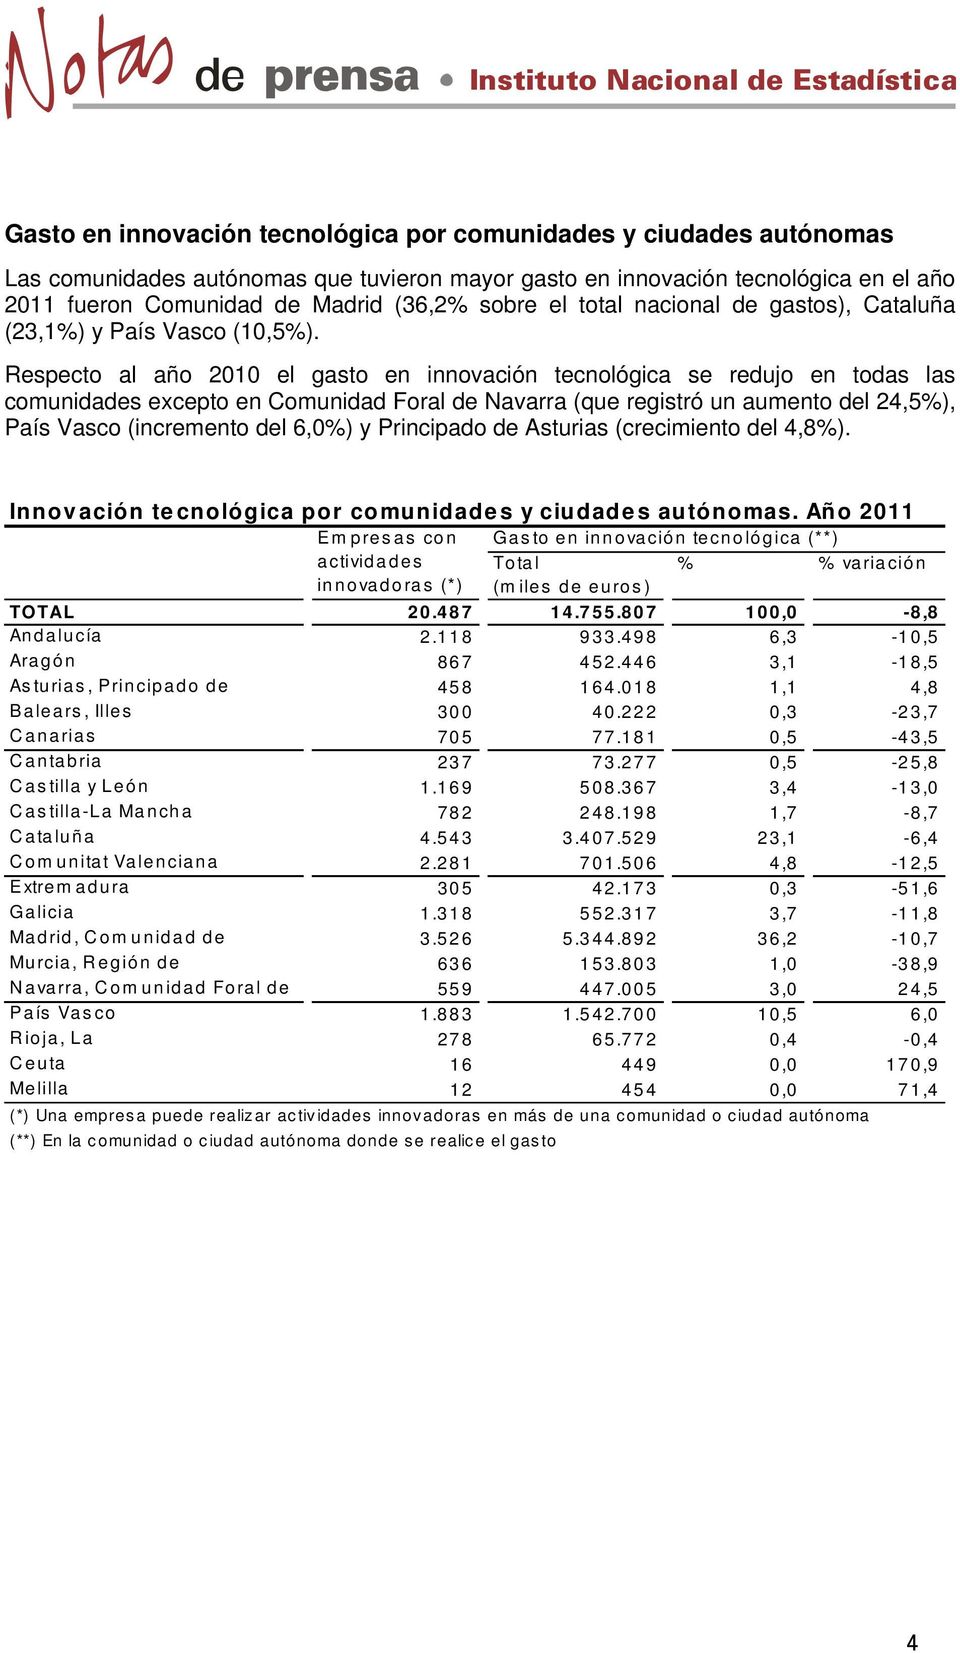 Respecto al año 2010 el gasto en innovación tecnológica se redujo en todas las comunidades excepto en Comunidad Foral de Navarra (que registró un aumento del 24,5%), País Vasco (incremento del 6,0%)